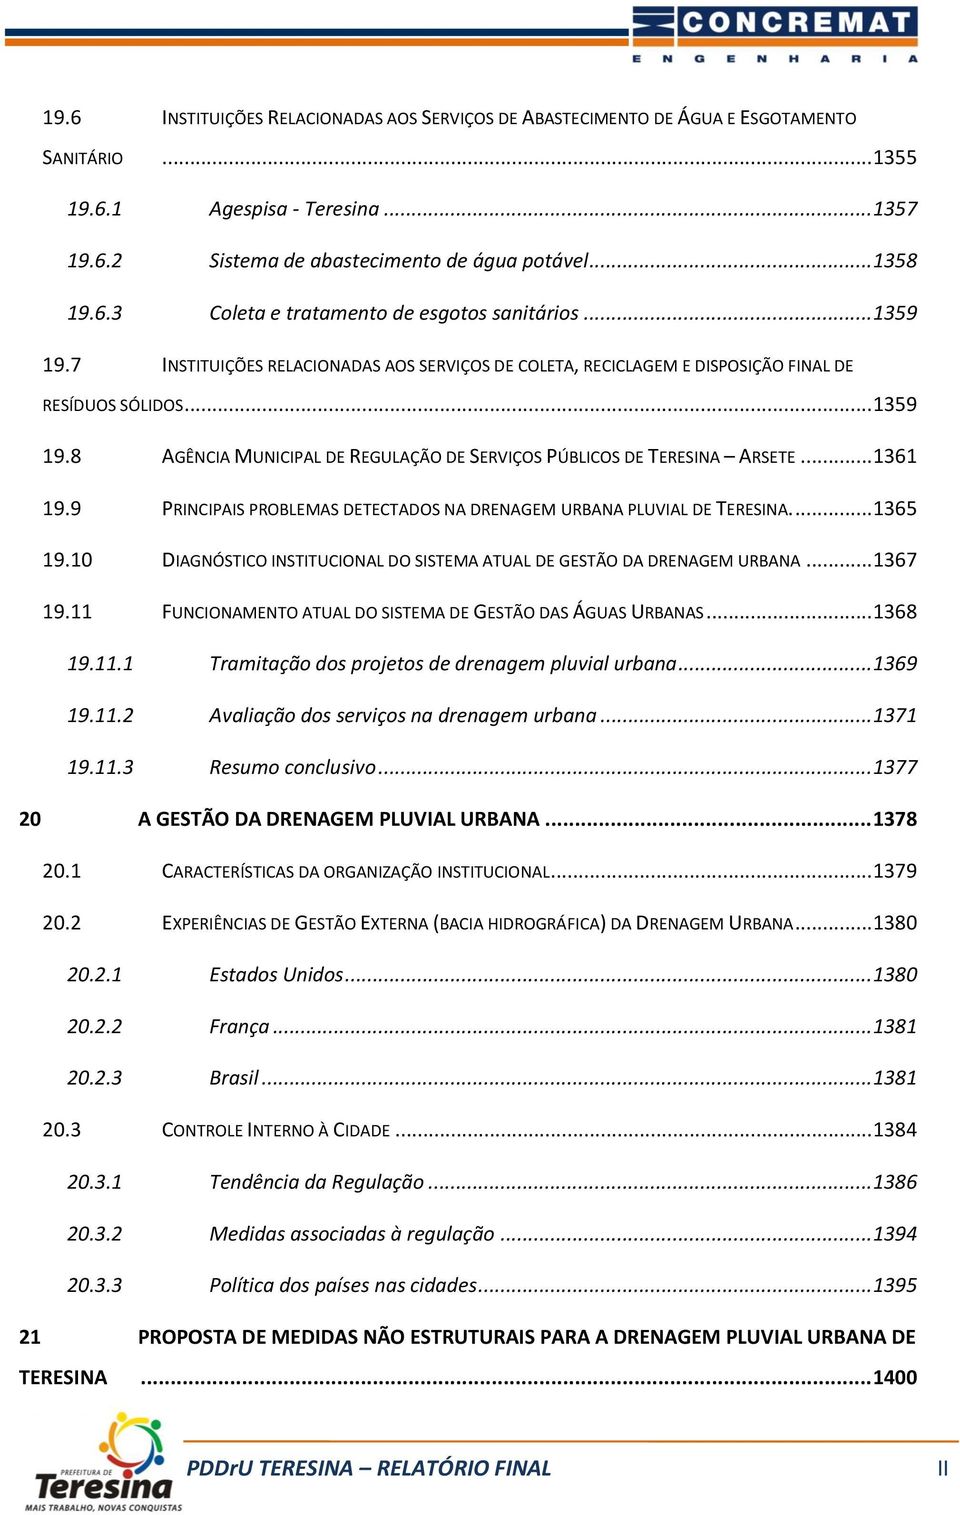 .. 1361 19.9 PRINCIPAIS PROBLEMAS DETECTADOS NA DRENAGEM URBANA PLUVIAL DE TERESINA.... 1365 19.10 DIAGNÓSTICO INSTITUCIONAL DO SISTEMA ATUAL DE GESTÃO DA DRENAGEM URBANA... 1367 19.